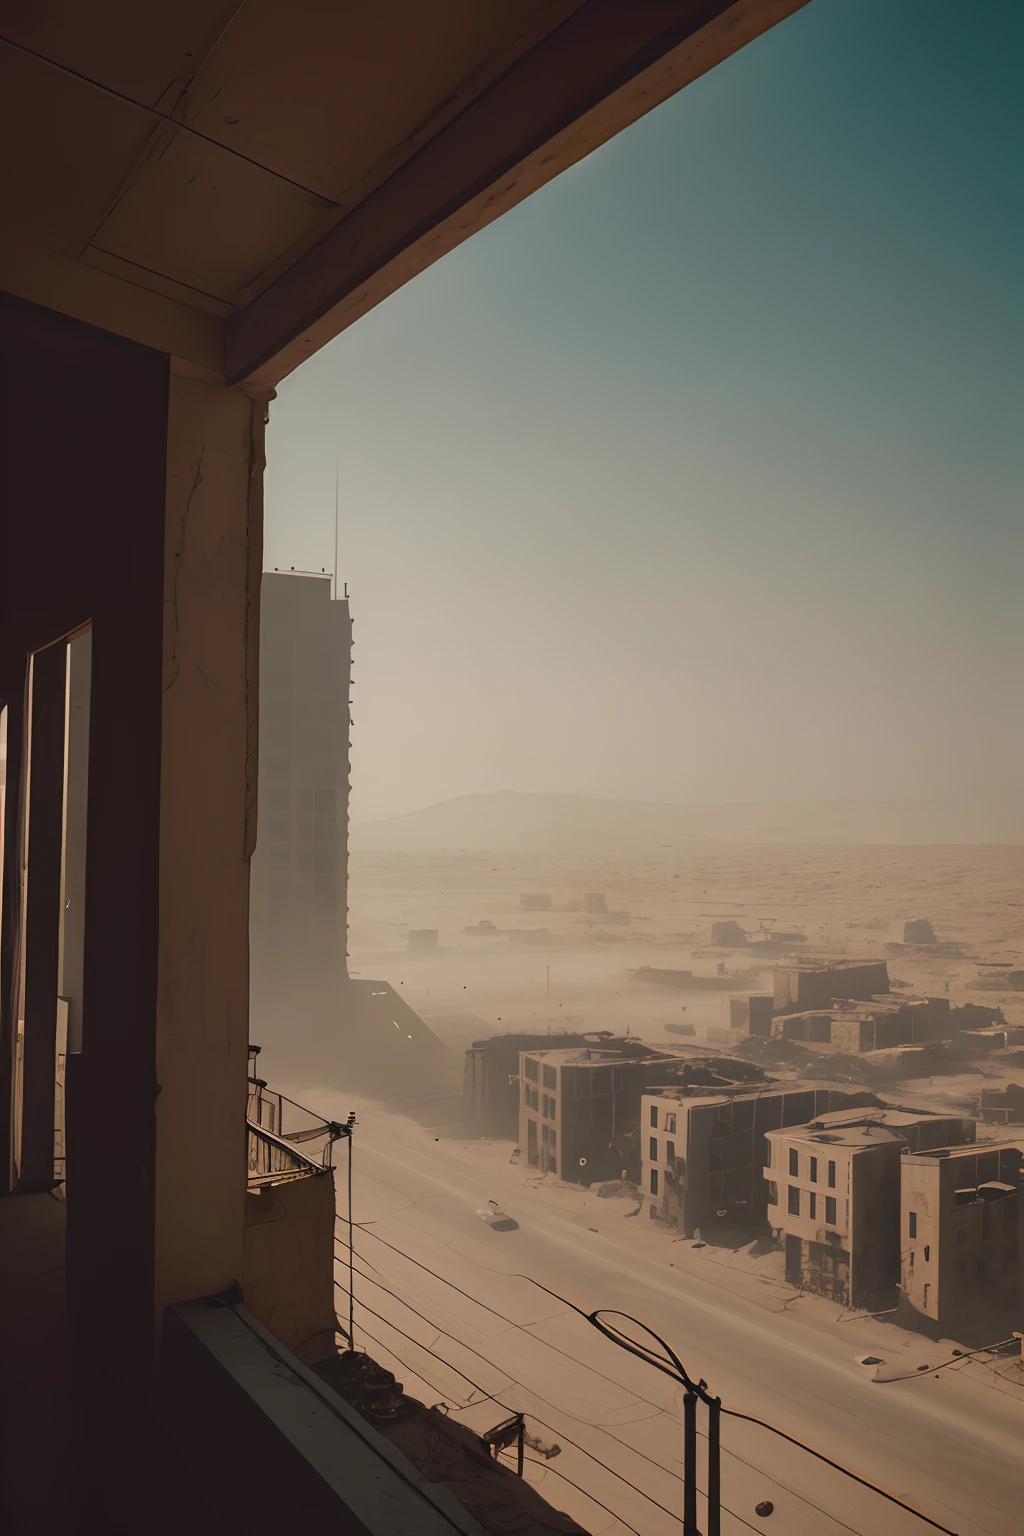 电影剧照, 复古未来塞尔维亚建筑, 沙漠 辐射 后世界末日, 有雾, (从阳台欣赏城市街道景观:1.2), 虚幻引擎, 光线追踪, (灰尘颗粒:1.1), 眩晕, 红色和橙色的雾霾, 沙暴, 乌云密布, 最后生还者, 疯狂的麦克斯, 生化危机, RAW 照片, 超现实的照片, 8K 超高清, 数码单反相机, 自然采光, 高质量, 胶片颗粒, 富士 XT3, 超现实主义, 色彩分级, 体积照明, 体积雾,